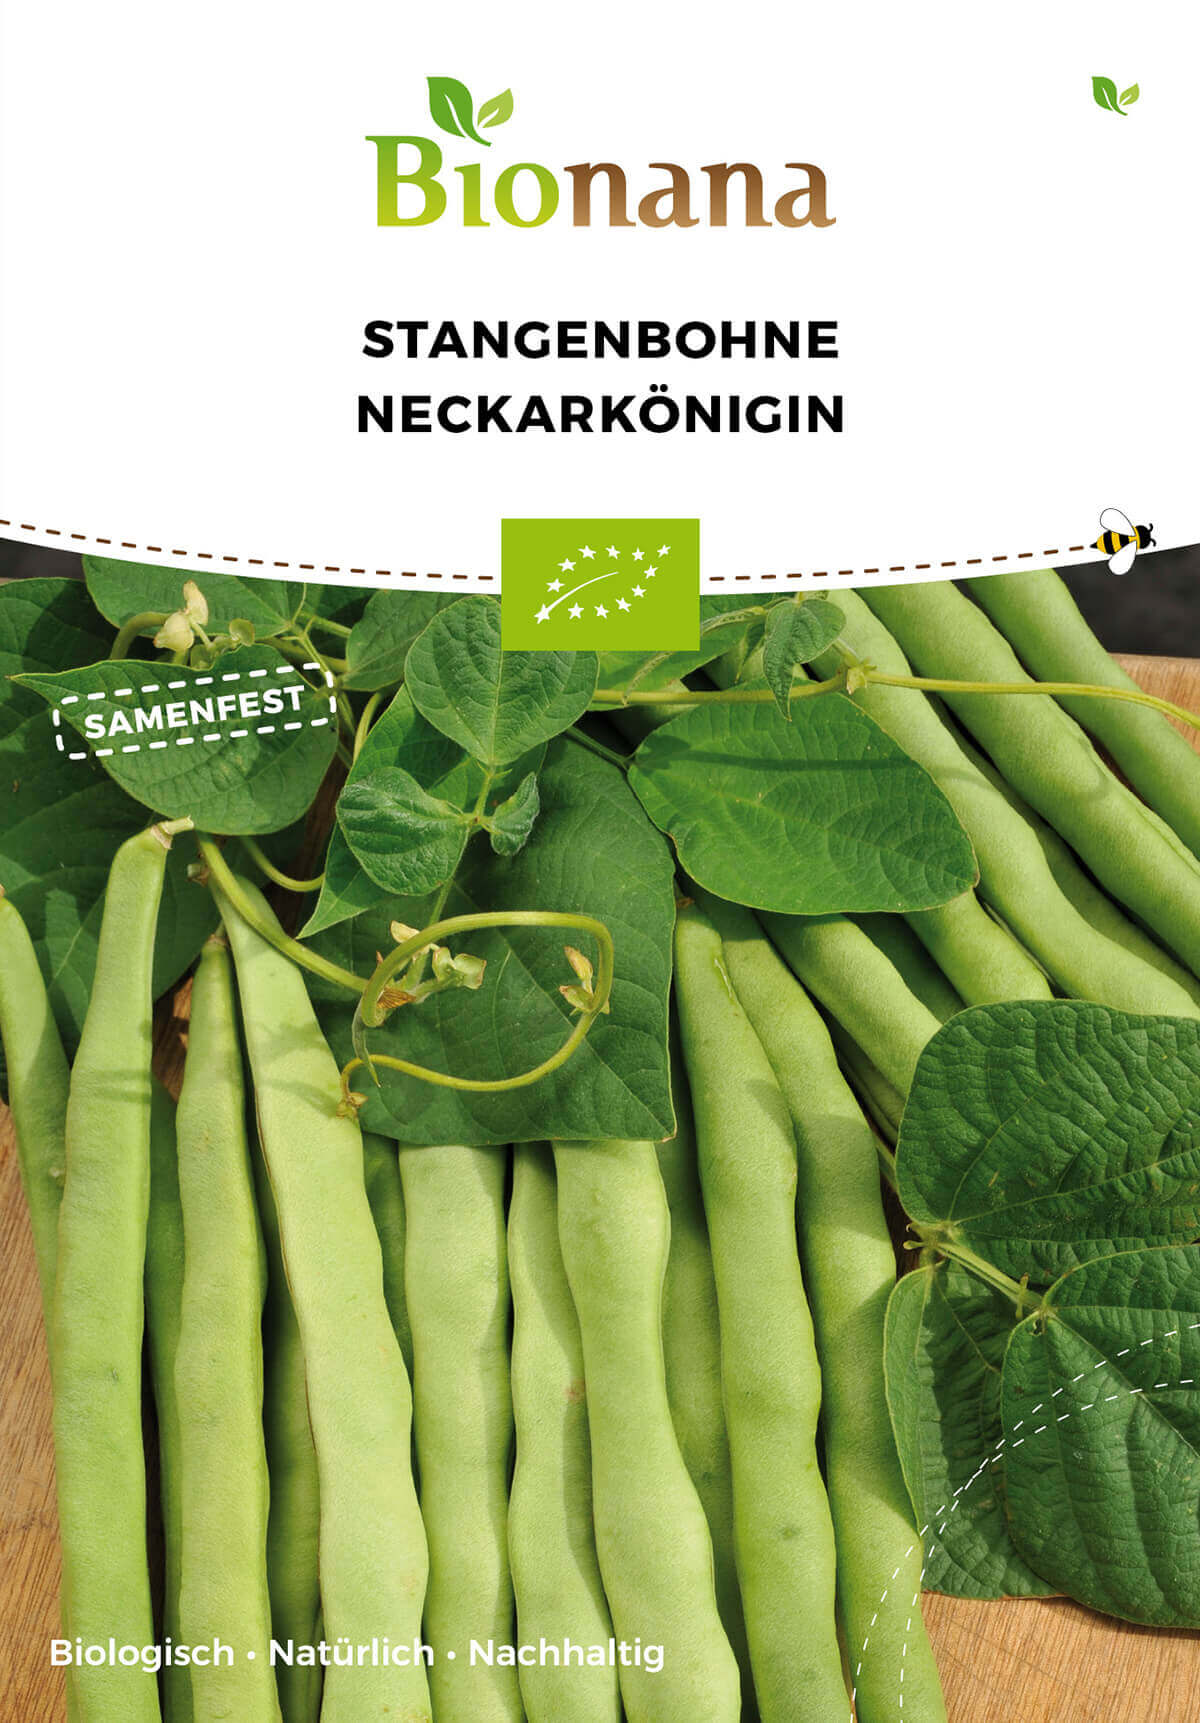 Stangenbohne Neckarkönigin | BIO Stangenbohnensamen von Bionana